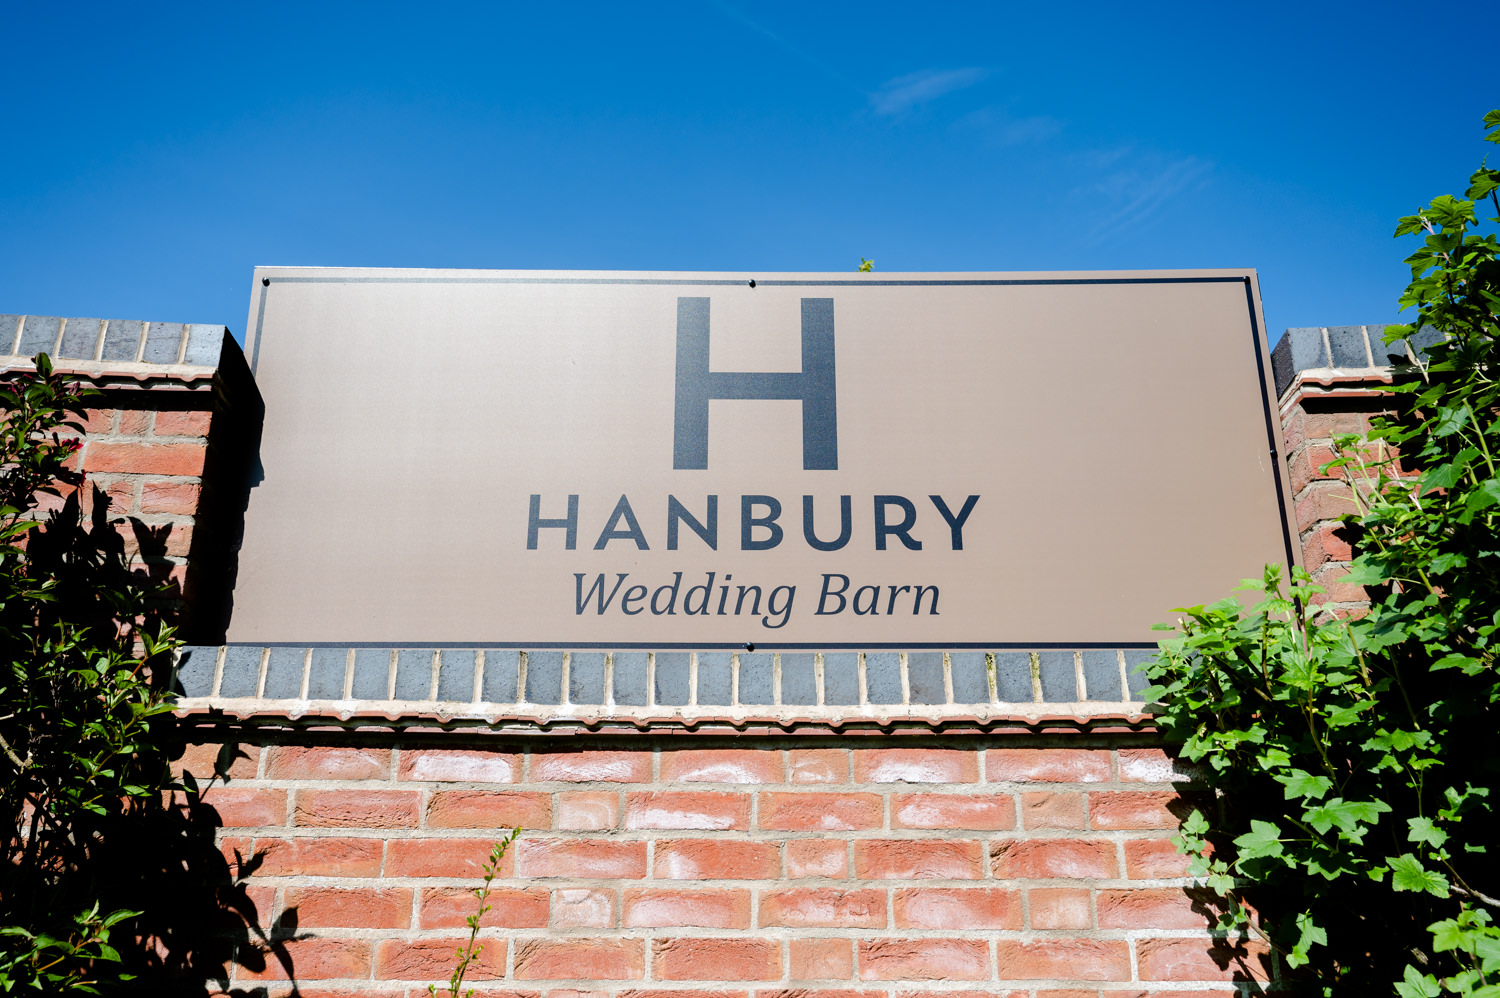 Hanbury Wedding Barn entrance sign